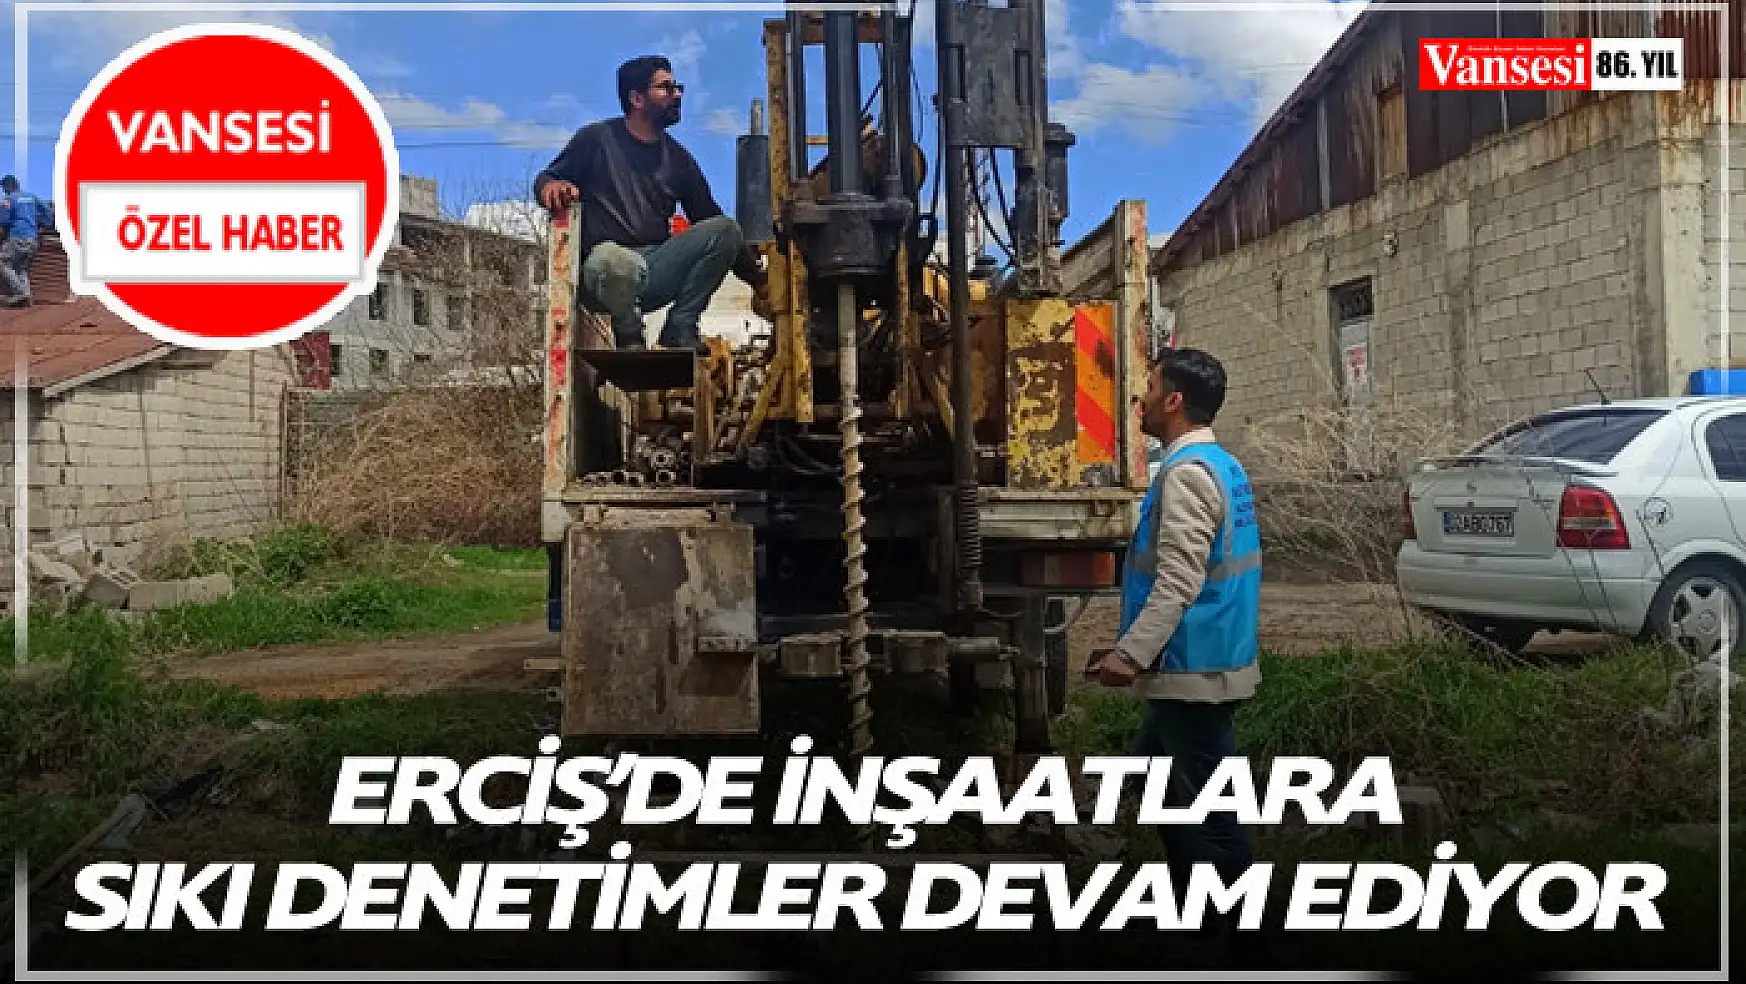 Erciş'de inşaatlara sıkı denetimler devam ediyor